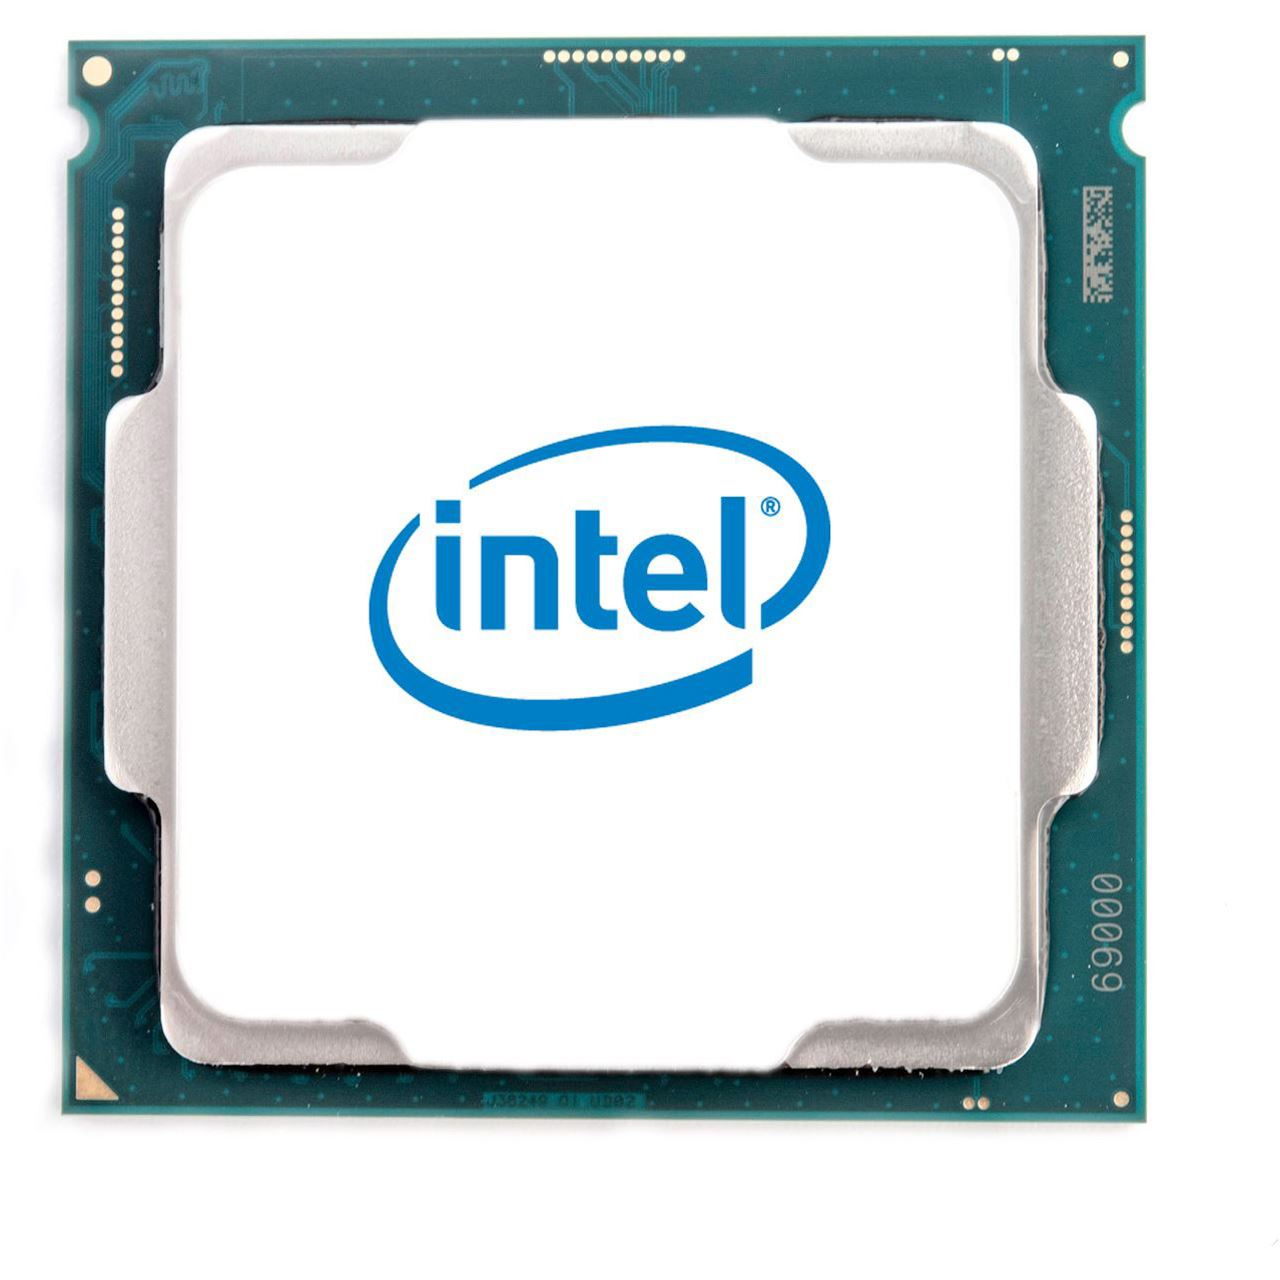 Intel C9700kt Online Cpu Buy Low Price In Online Shop Topmarket Netanya Israel